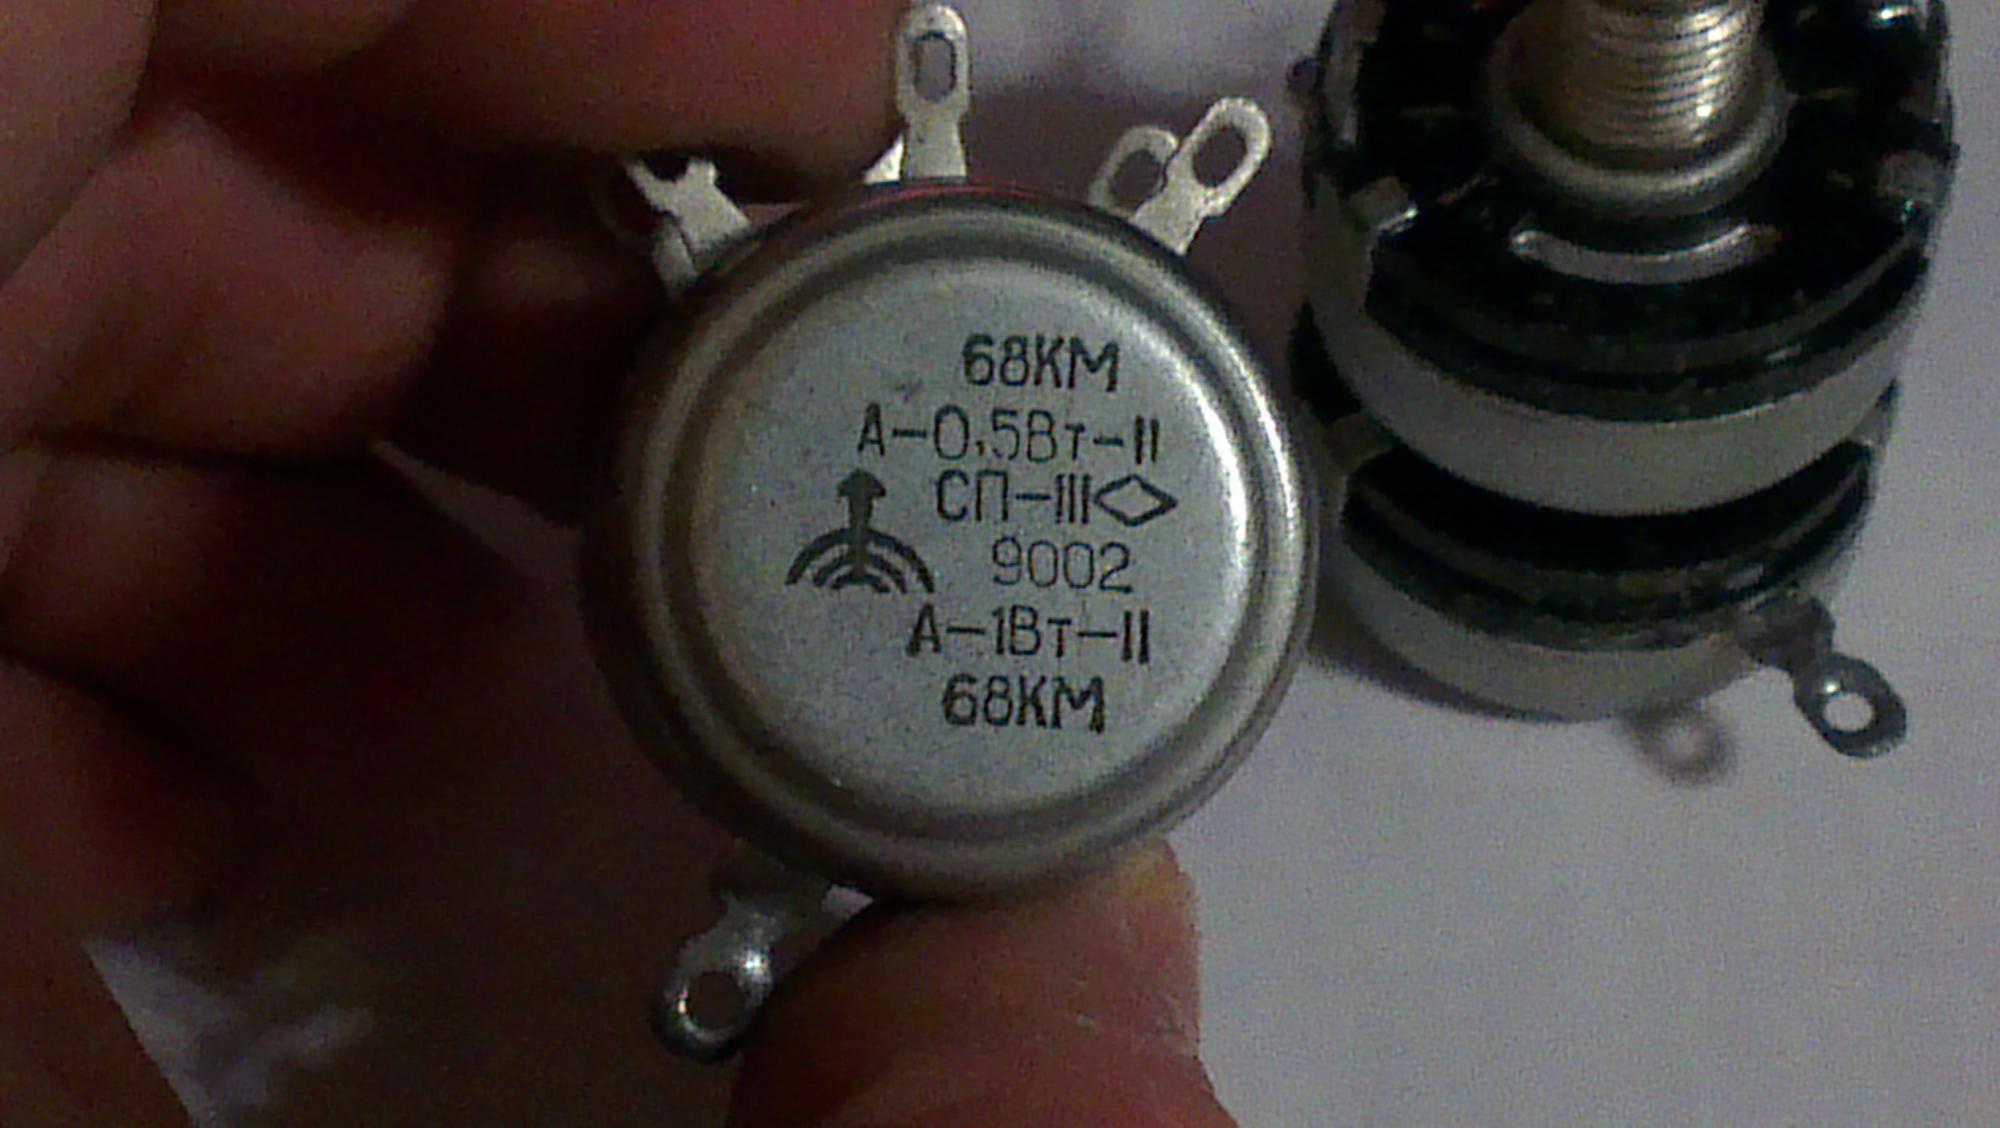 Сп 3 го. Сдвоенный переменный резистор СП-1. Резистор переменный сдвоенный сп3-12. Резистор СП-1 0783 А-1вт-11 68кв. Резистор СП-III сдвоенный.